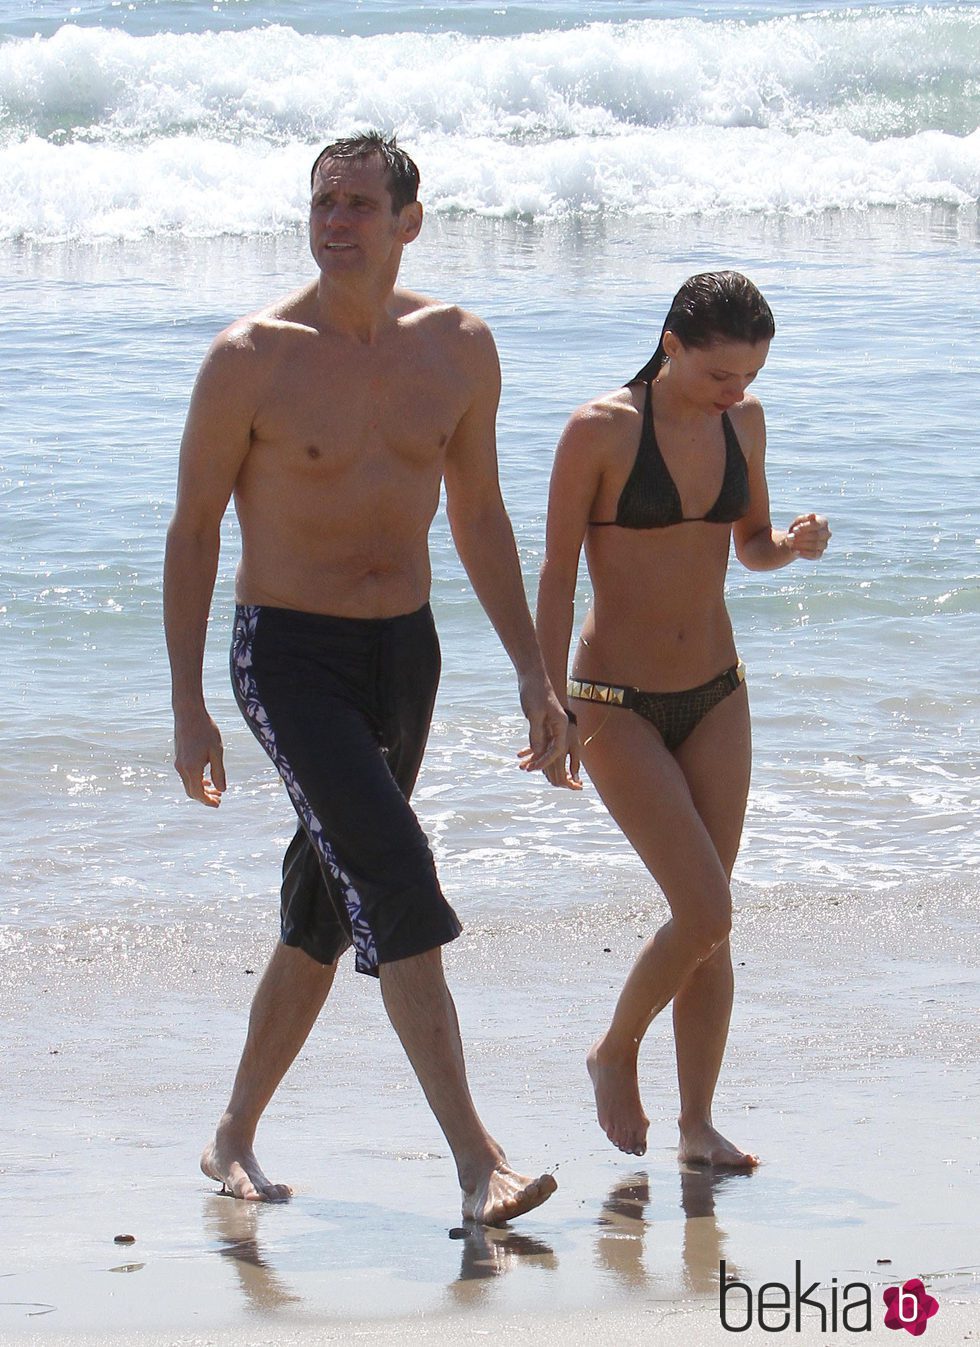 Jim Carrey y Cathriona White en las playas de Malibú de vacaciones